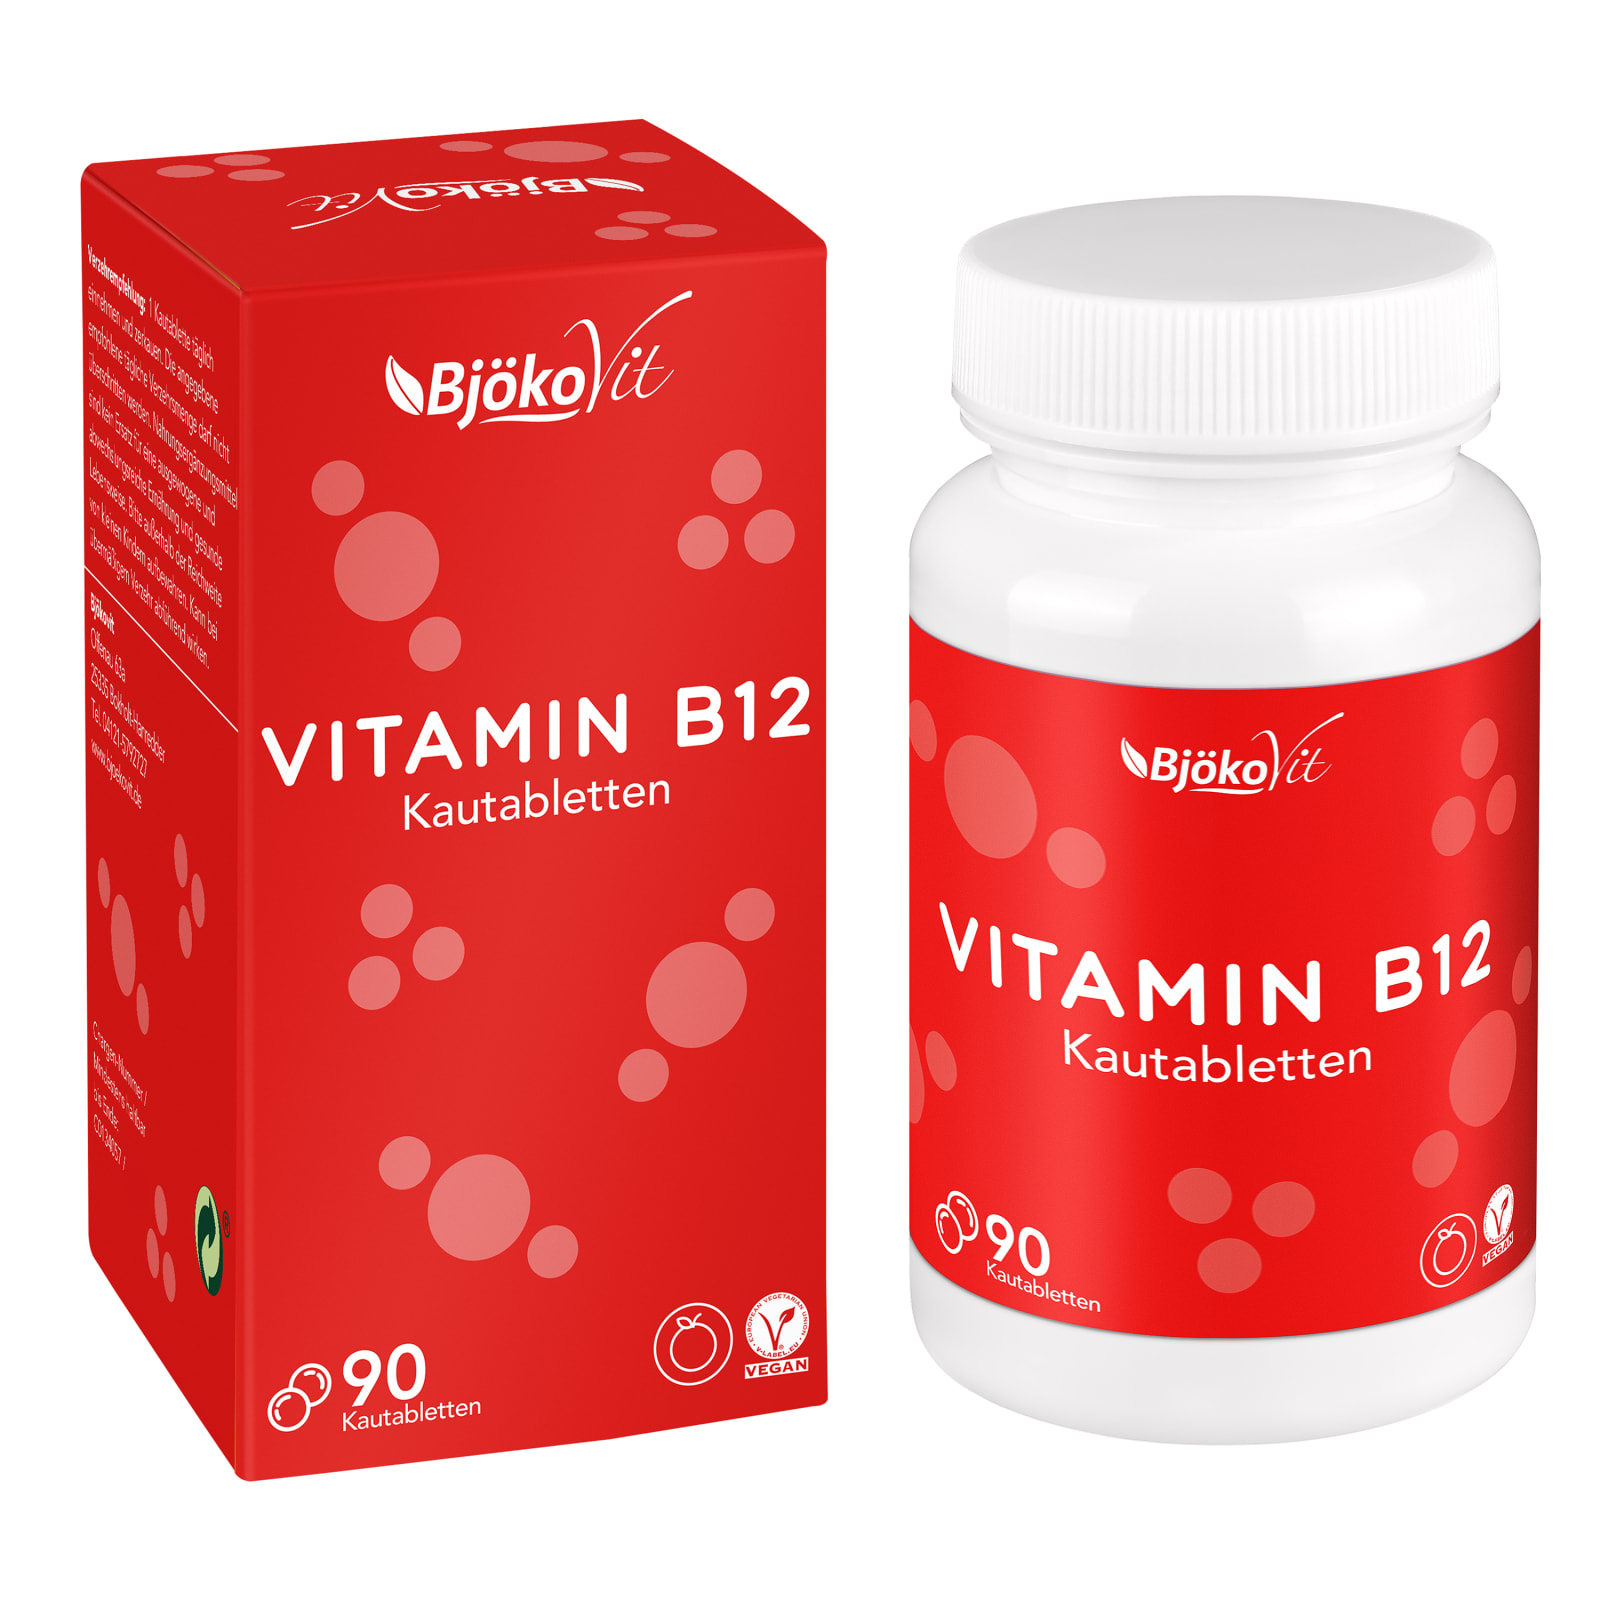 Maak avondeten bossen Mellow Vitamine B12 with Orange Flavour (90 tabs) van BjökoVit kopen | Bodylab Shop